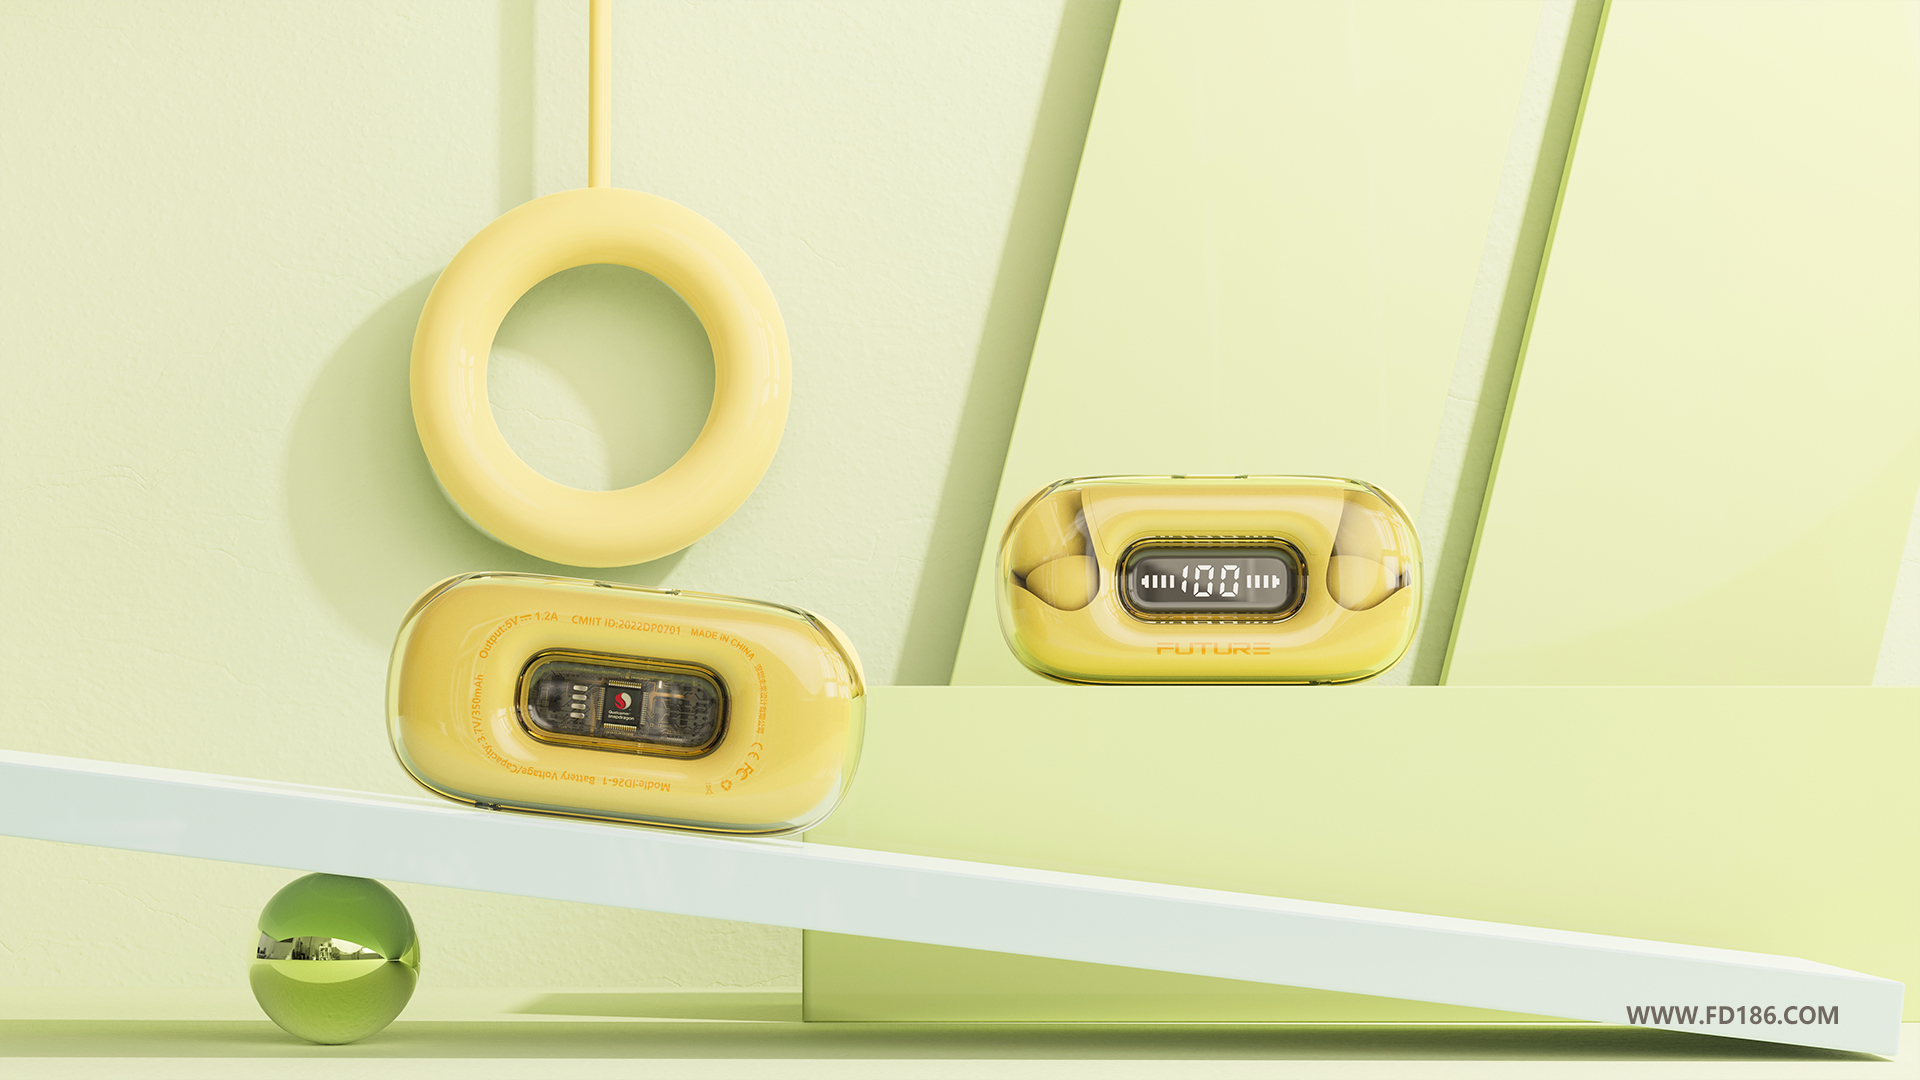 深圳工业设计公司未来设计案例-TWS蓝牙耳机